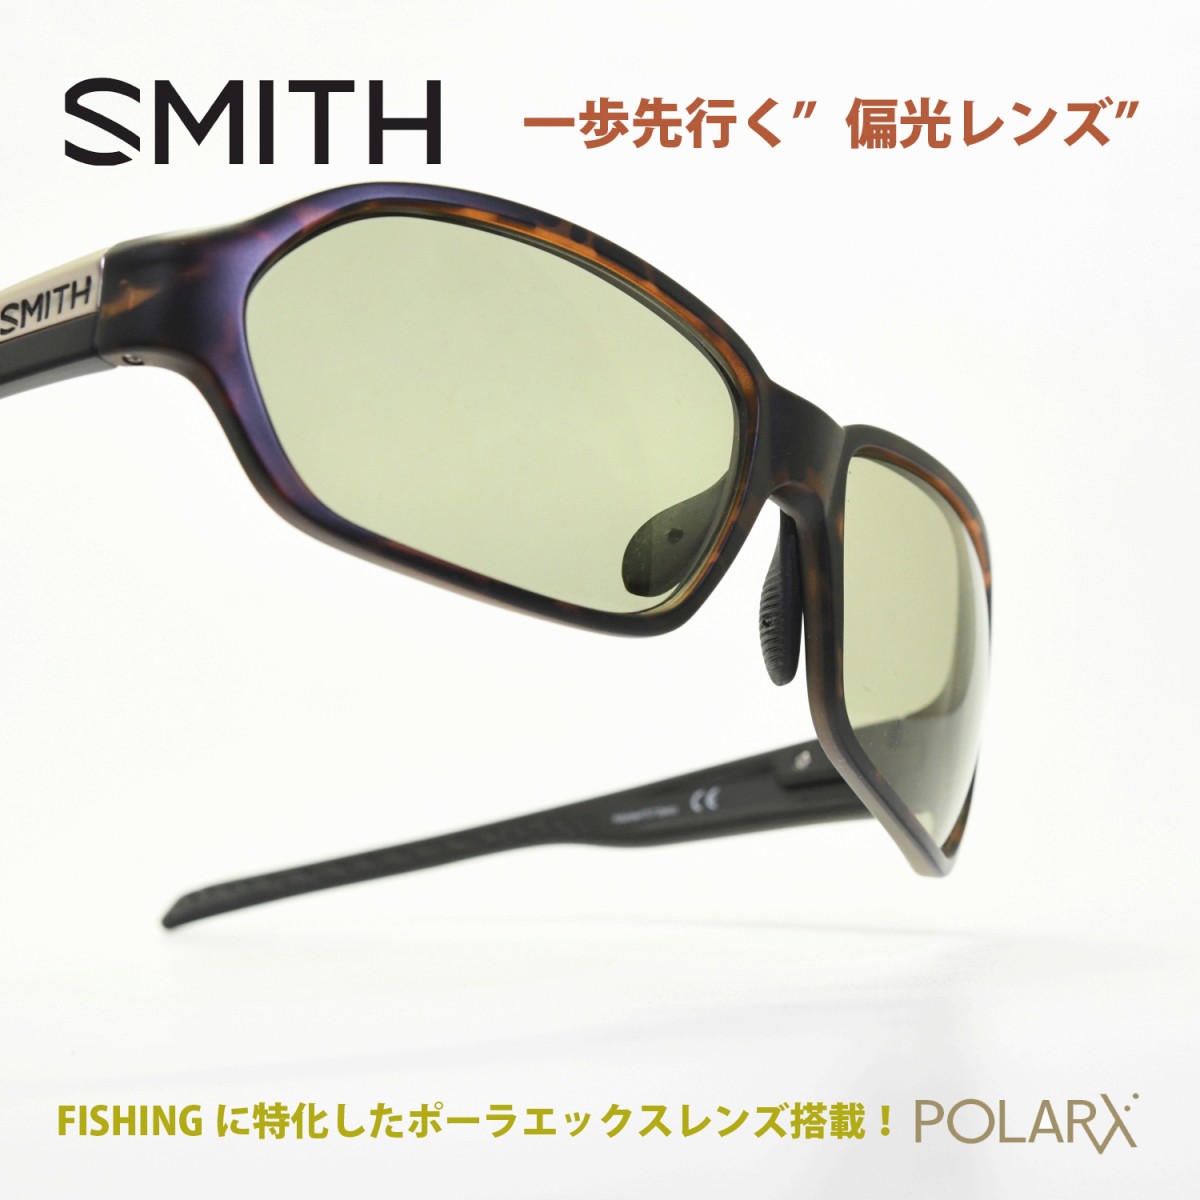 Smith スミス Aura オーラ Tortoise X Light Green37 メガネ 眼鏡 めがね メンズ レディース おしゃれ ブランド 人気 おすすめ フレーム 流行り 度付き レンズ サングラス スポーツ 偏光